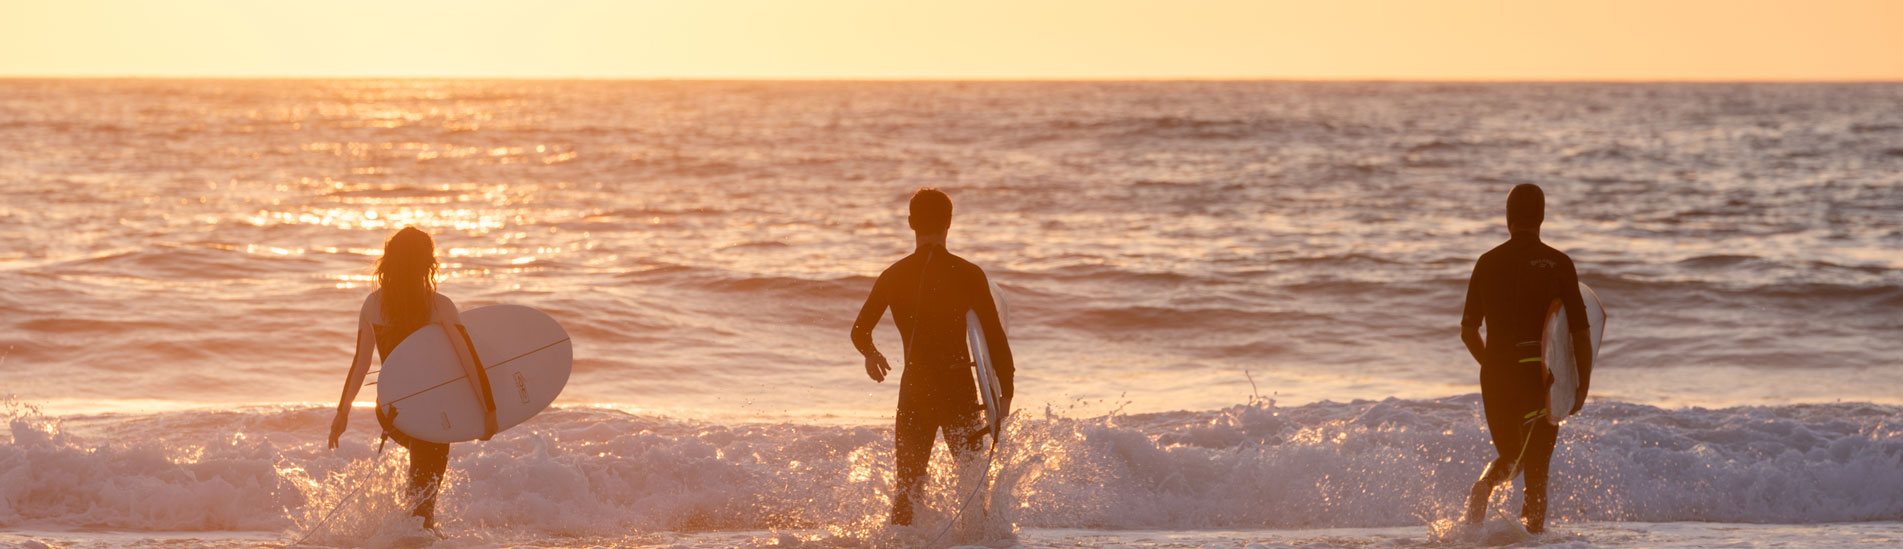 Spot de surf au coucher su soleil à Biscarrosse Plage dans les Landes